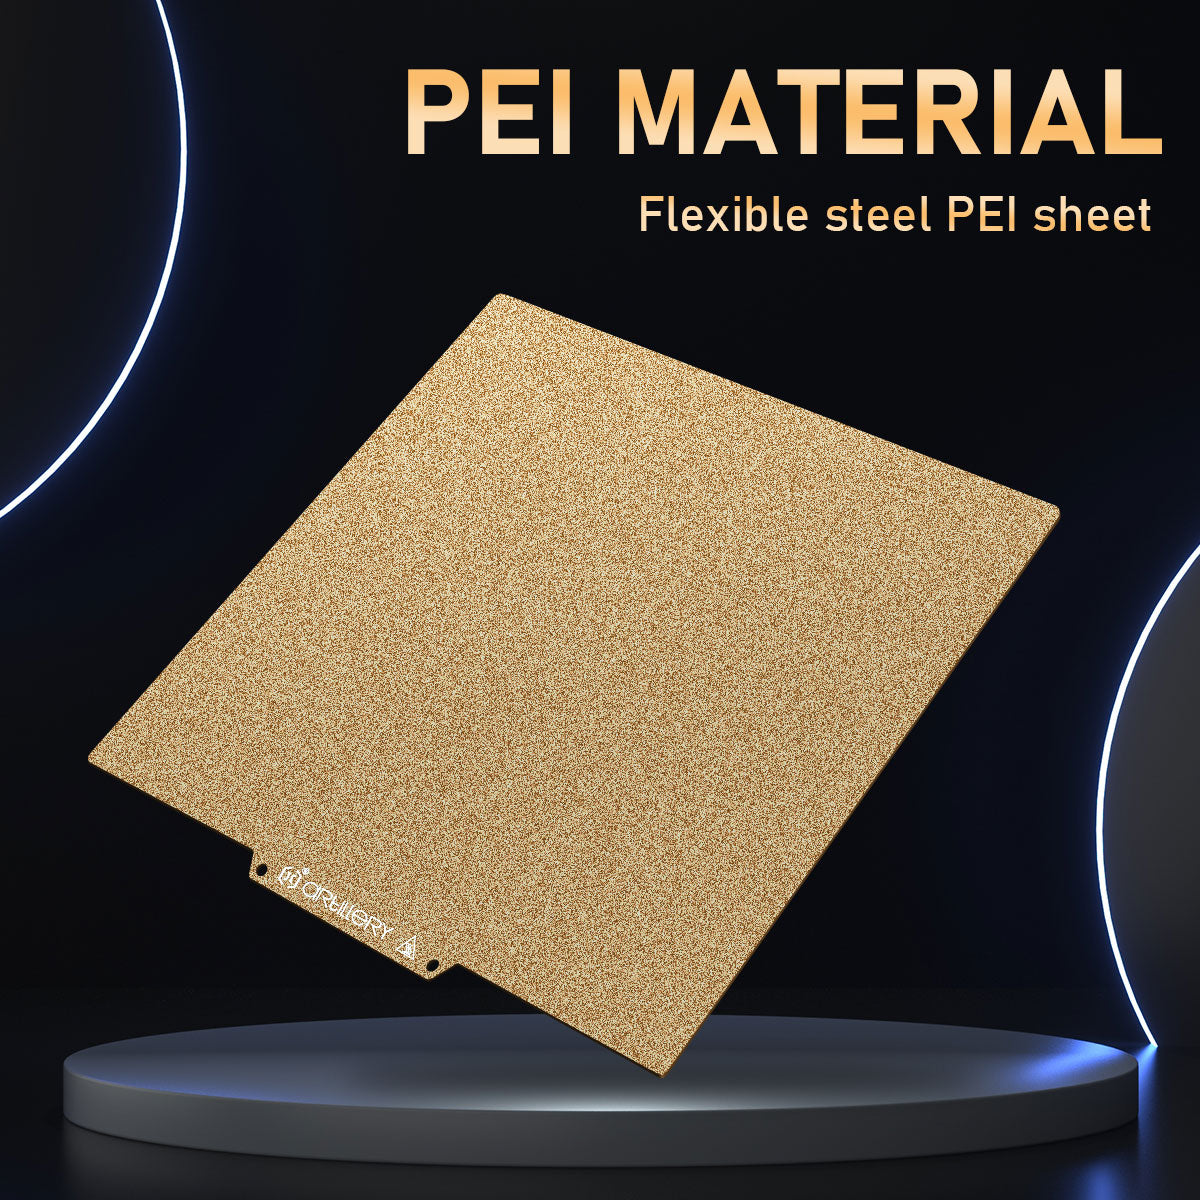 PEI Flexible Steel Pei Sheet